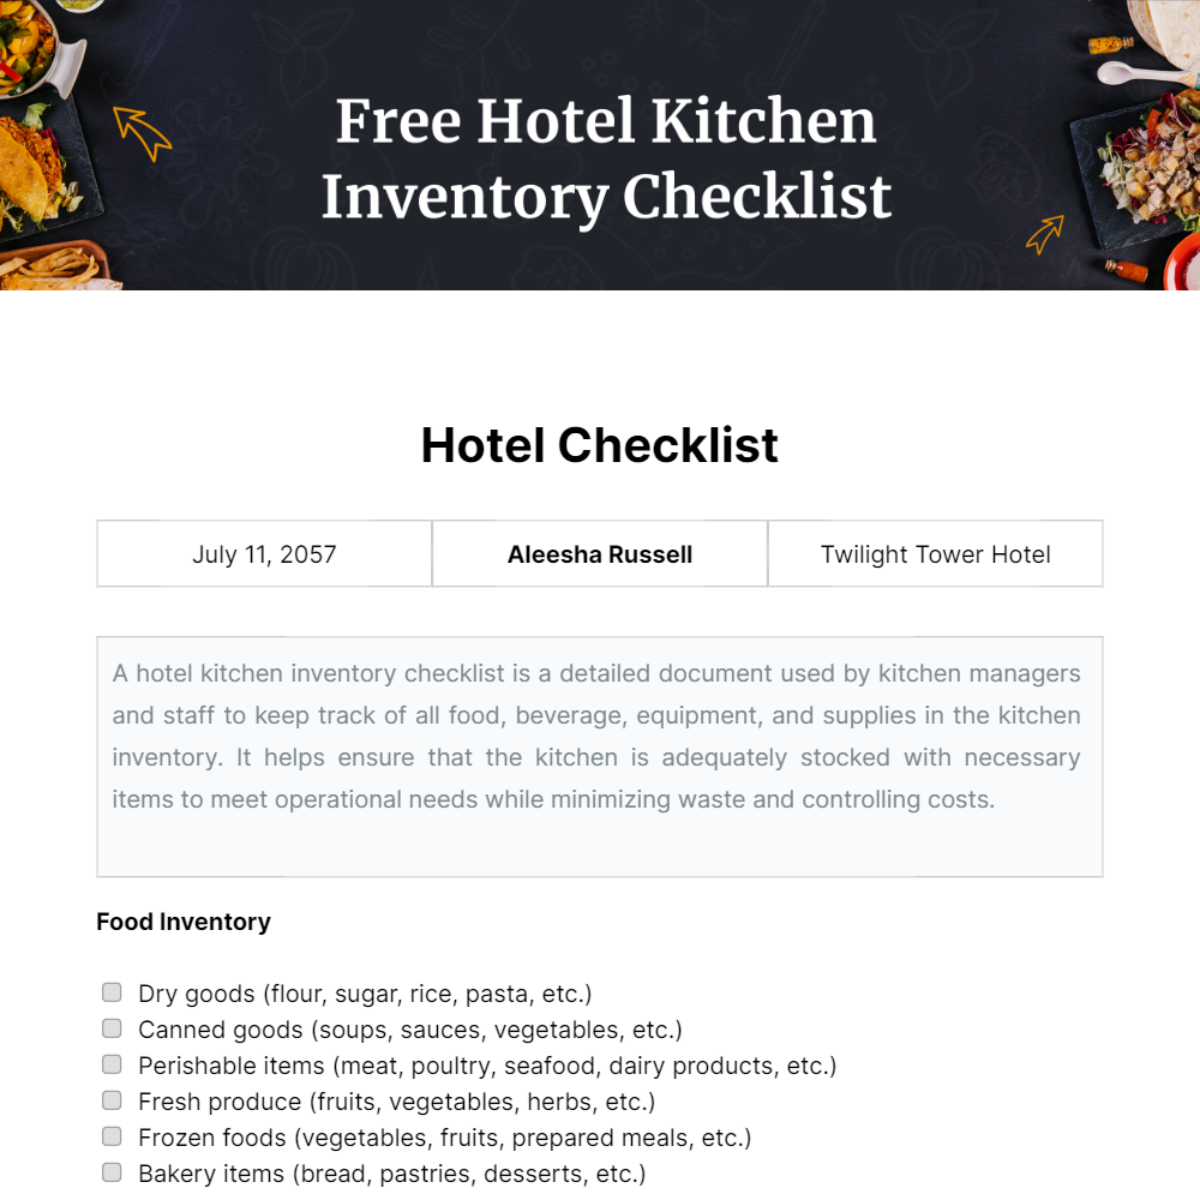 Free Hotel Kitchen Inventory Checklist Template 